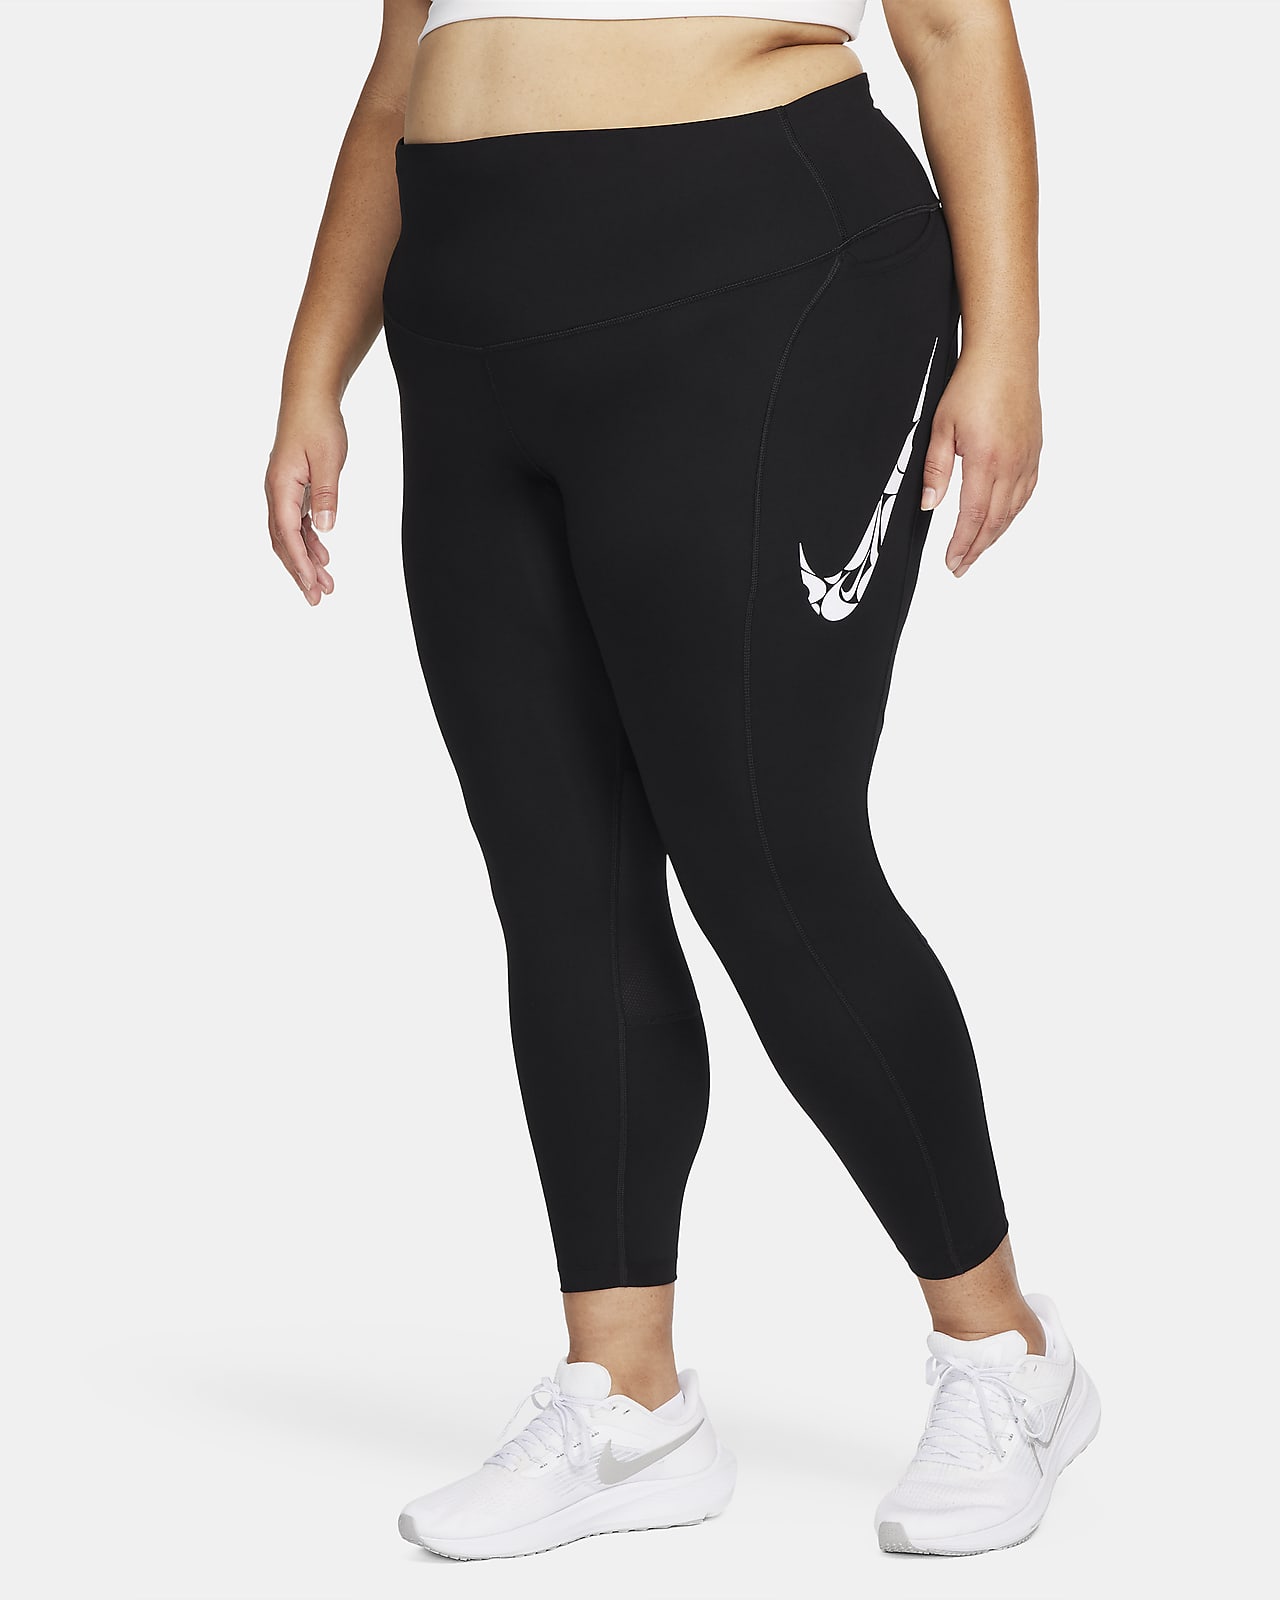 Nike Fast középmagas derekú, 7/8-os női futóleggings zsebekkel (plus size méret)